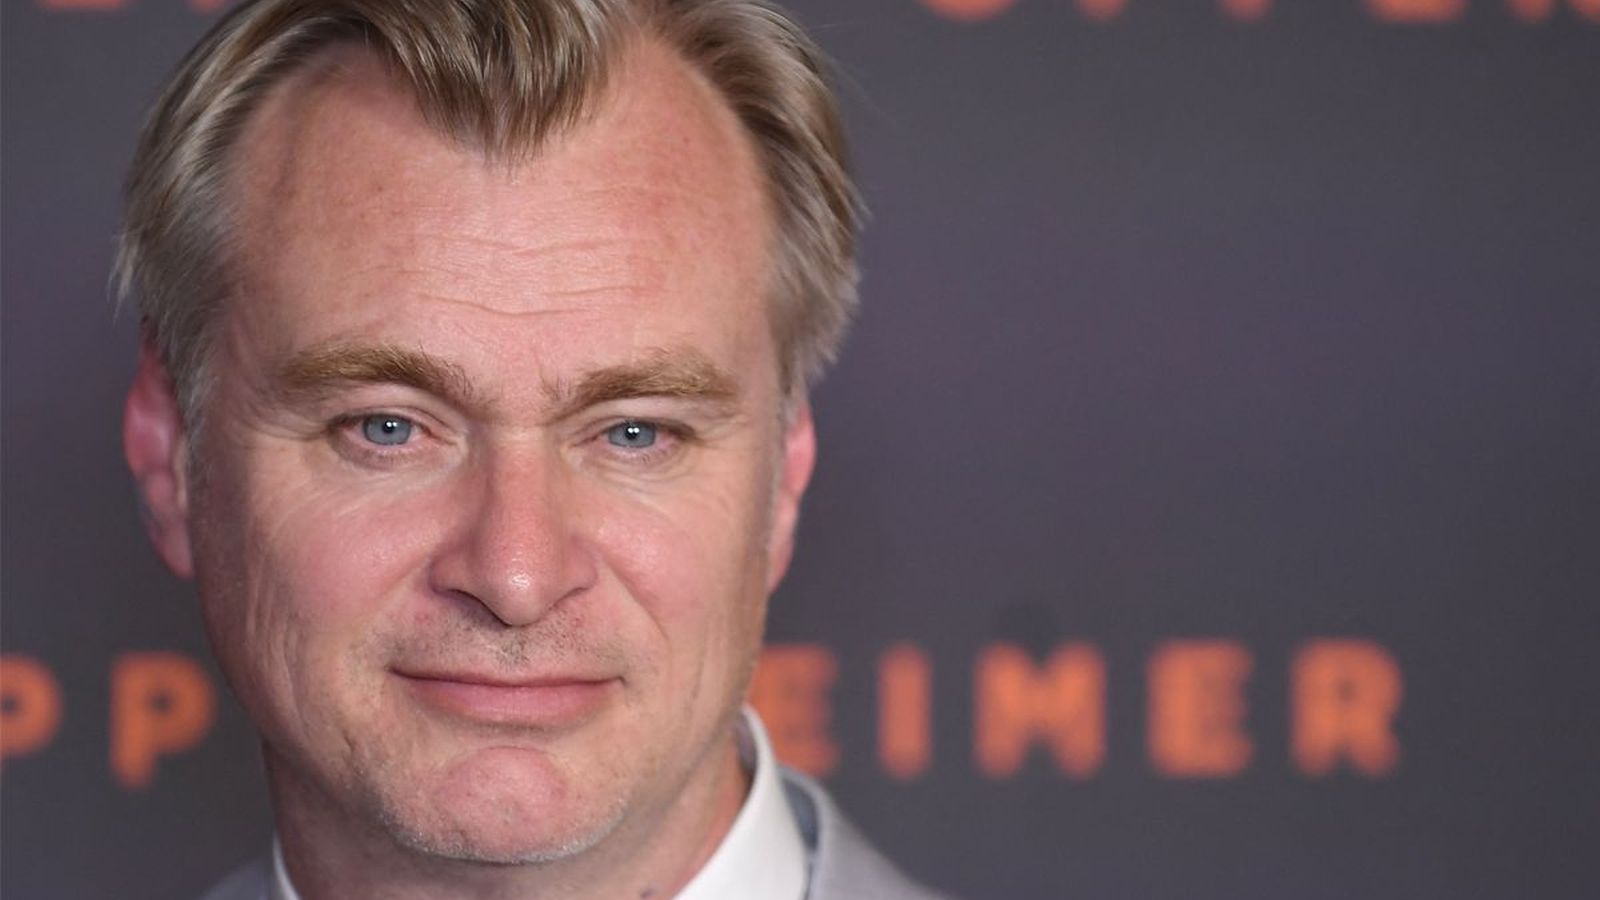 Tenet: Christopher Nolan spiega il film (con i popcorn) in un video illuminante